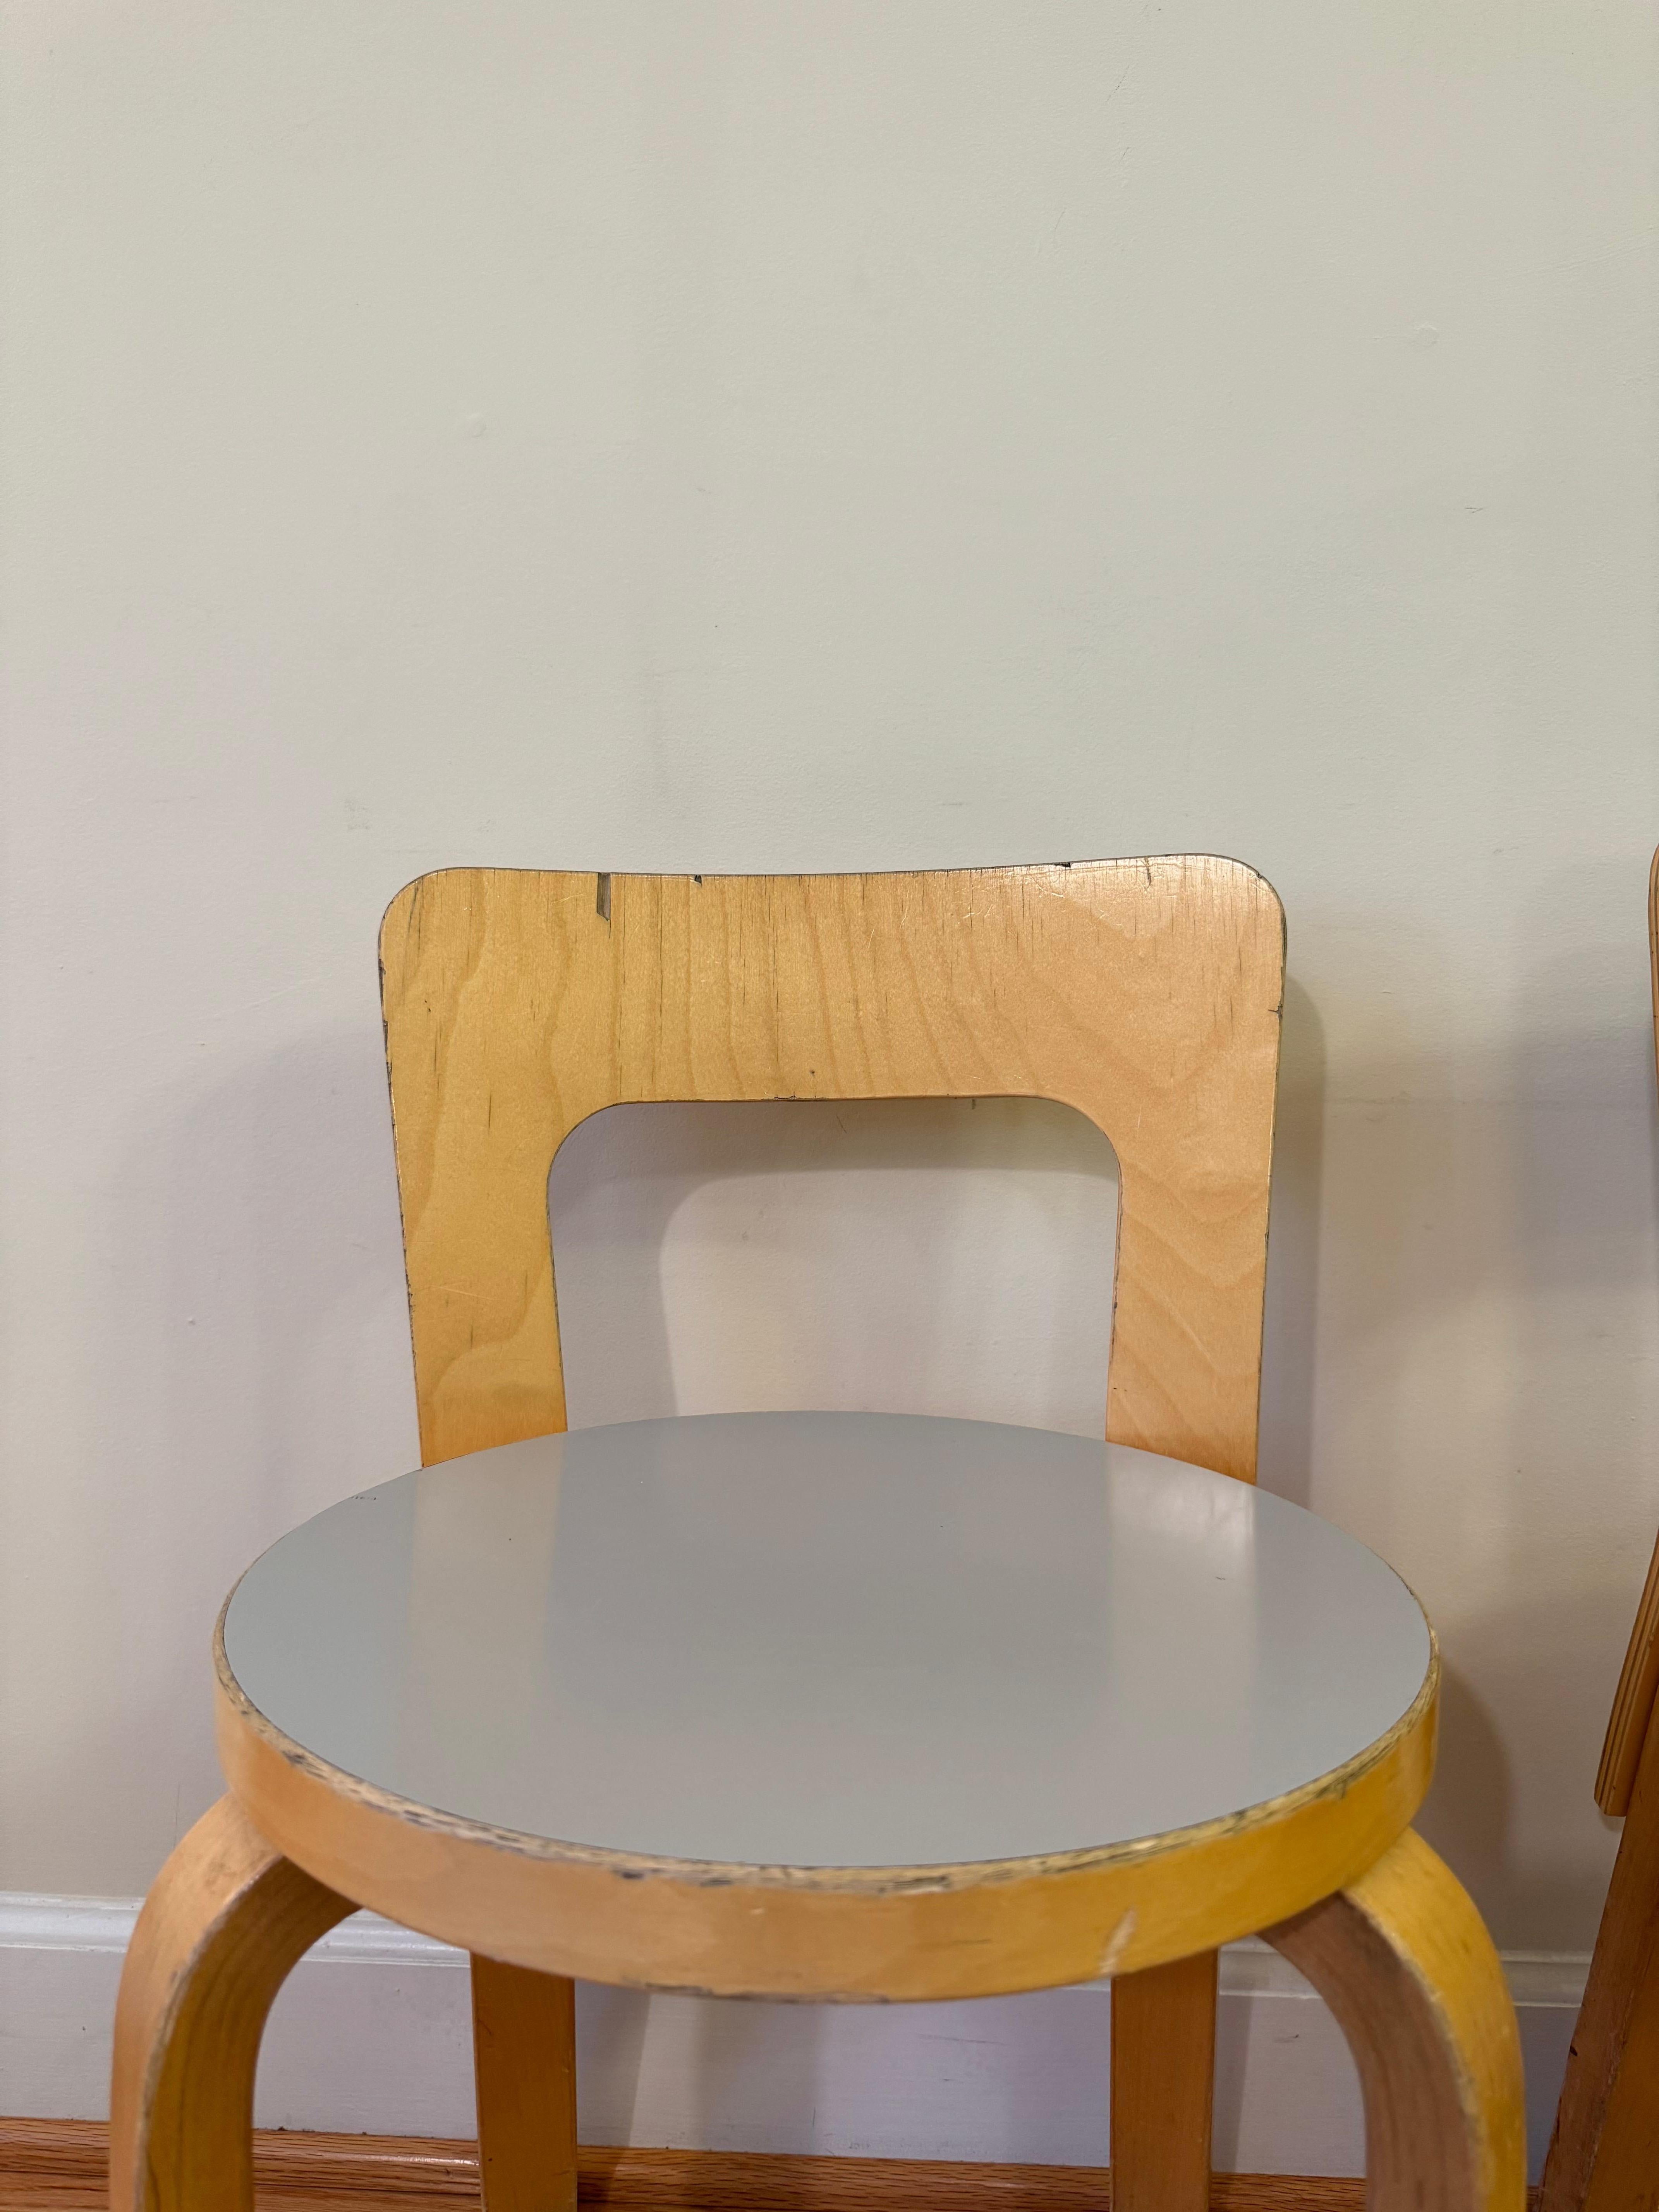 Mid-Century Modern Chair 65 by Alvar Aalto for Artek (White laminate) For Sale